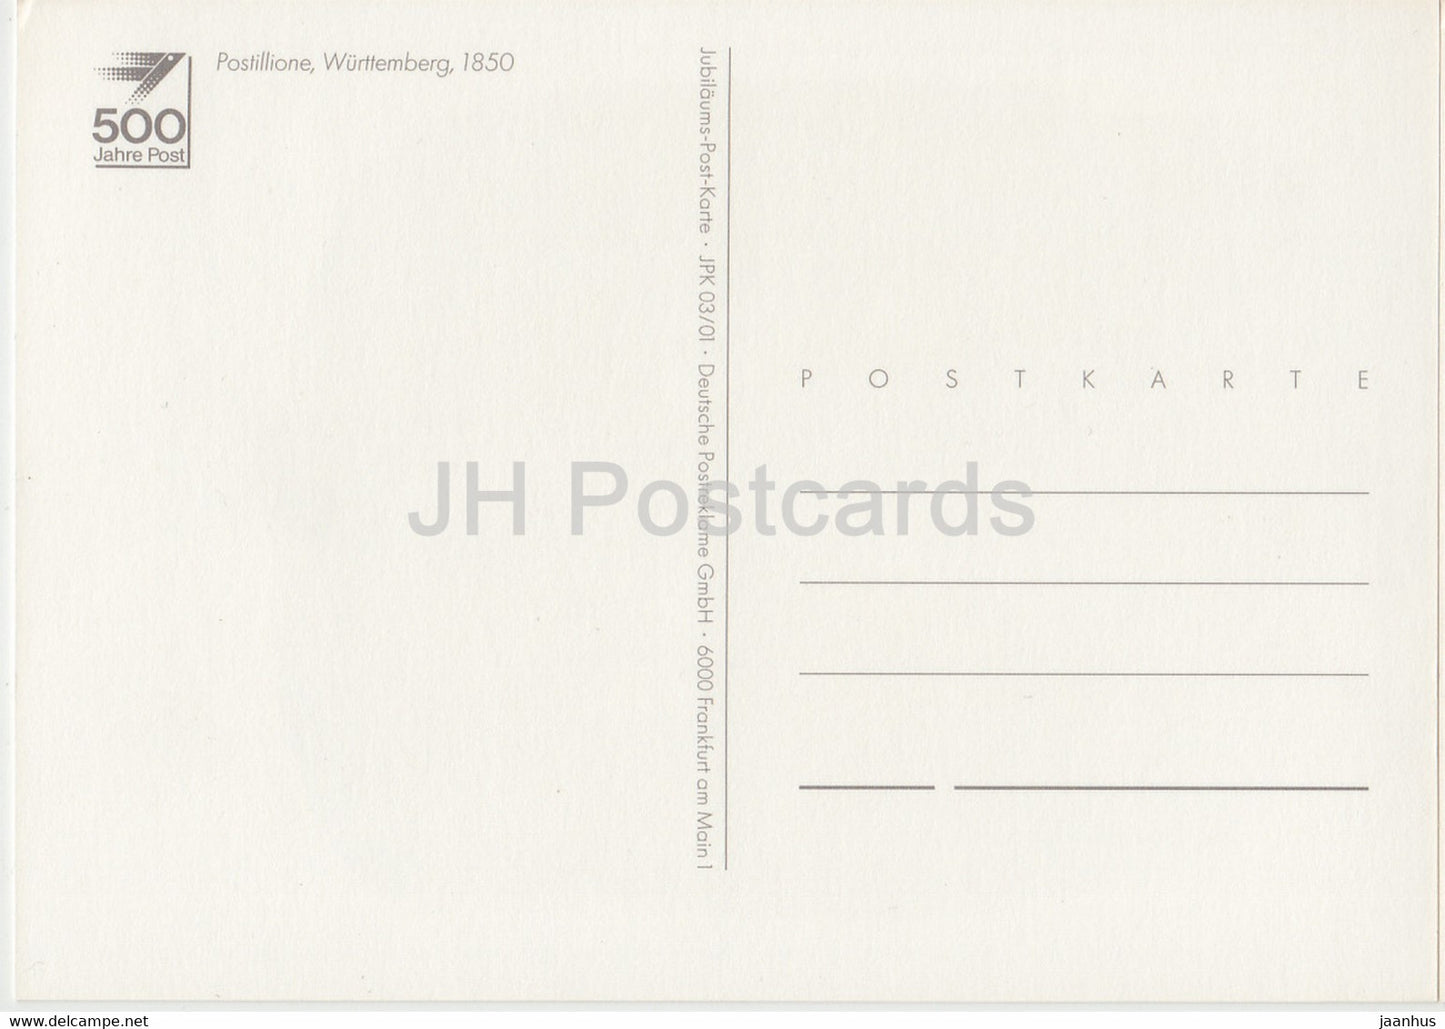 Postillione - Württemberg - Postboten - Postdienst - Deutschland - unbenutzt